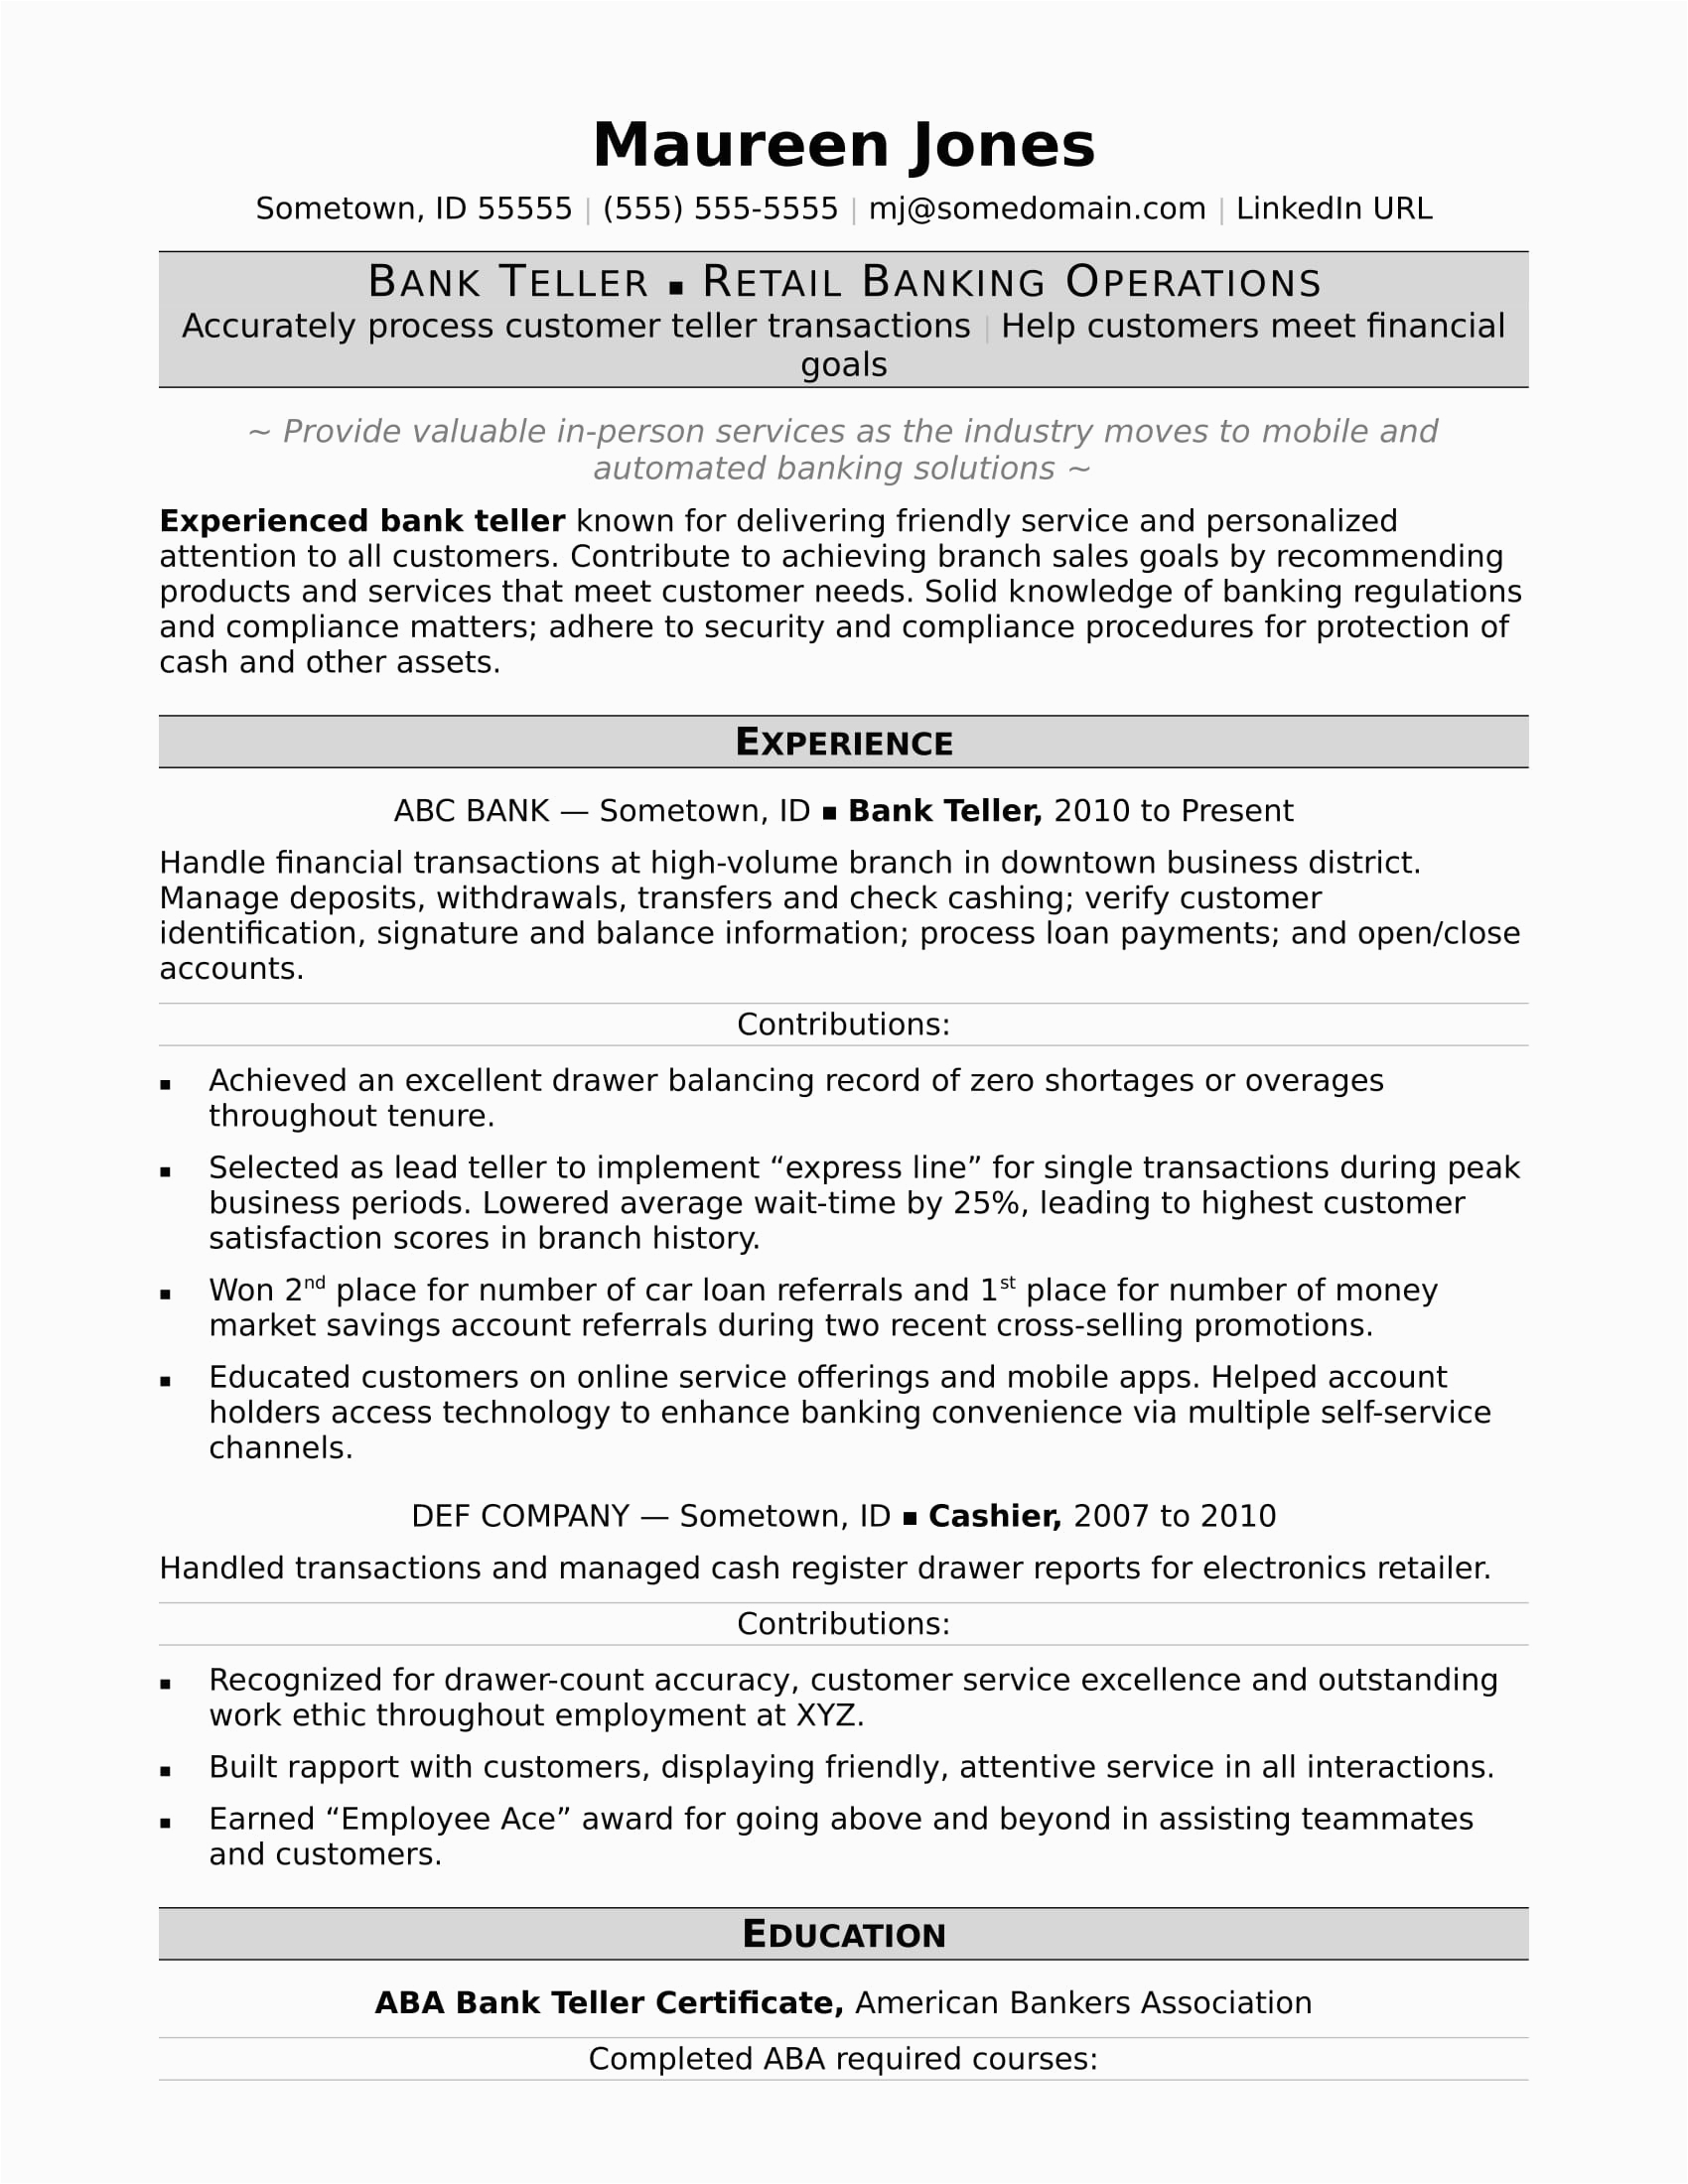 Resume Samples for Bank Teller Positions Bank Teller Resume Sample